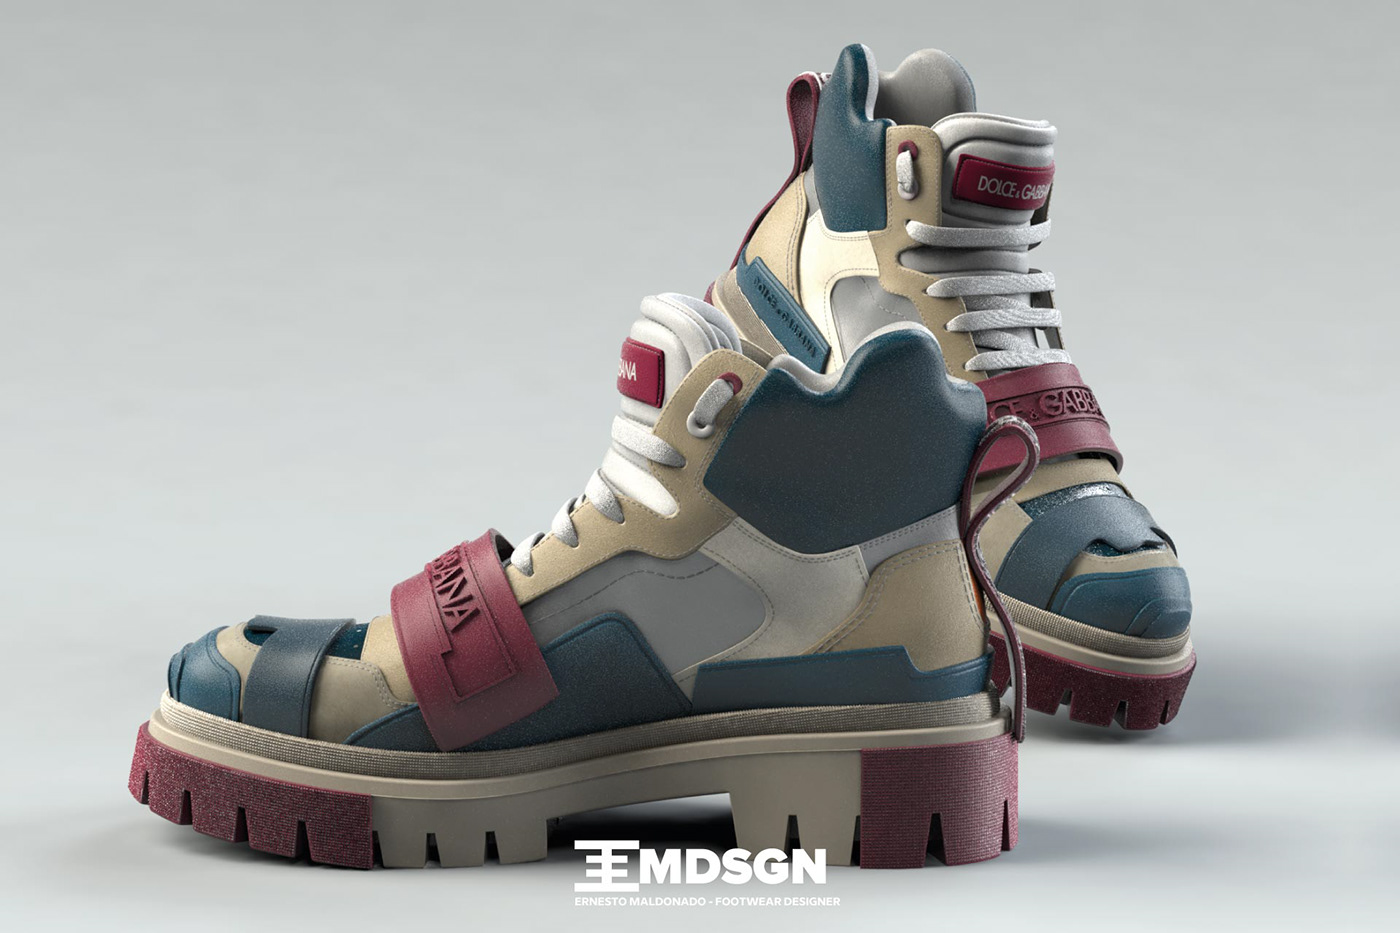 3D 3d footwear 3D Rendering dolce e gabbana footwear footwear design modeling shoe shoe design shoes